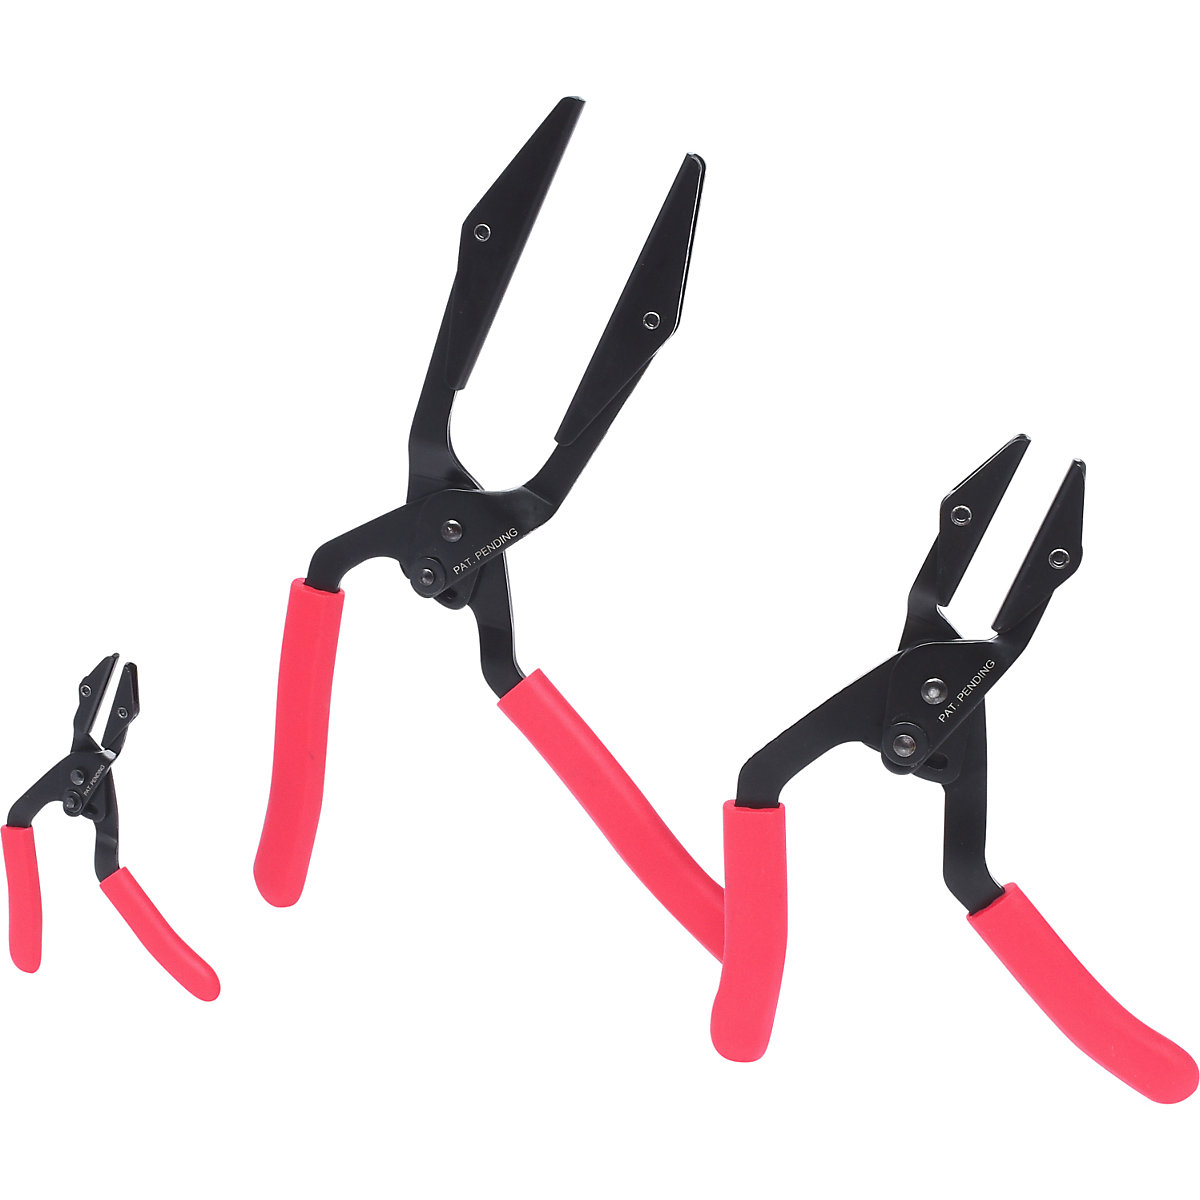 Hose clamp pliers set, angled – KS Tools